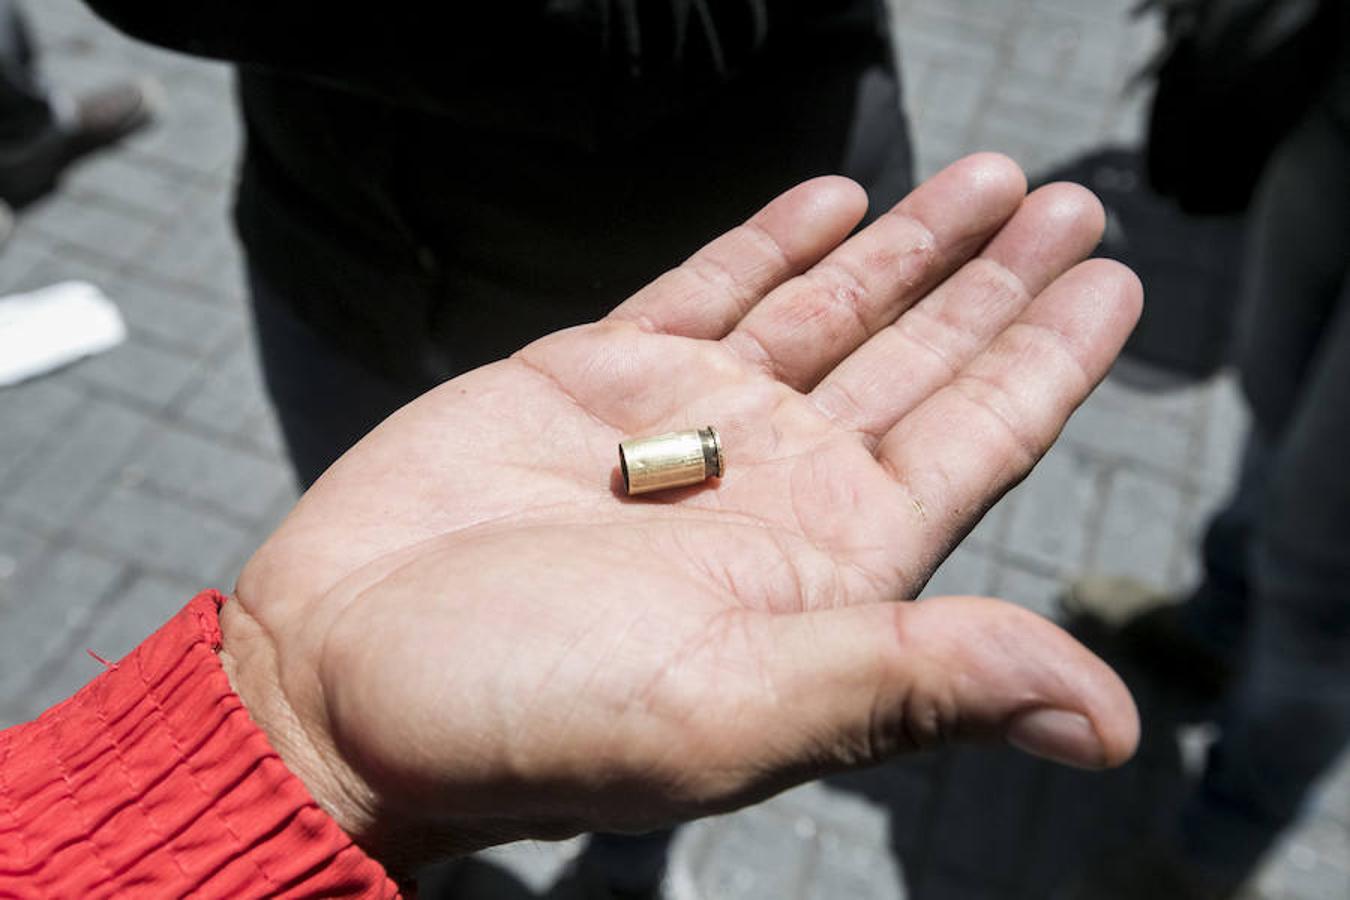 Un simpatizante del Gobierno muestra un casquillo de bala luego de enfrentamientos en la Asamblea Nacional.